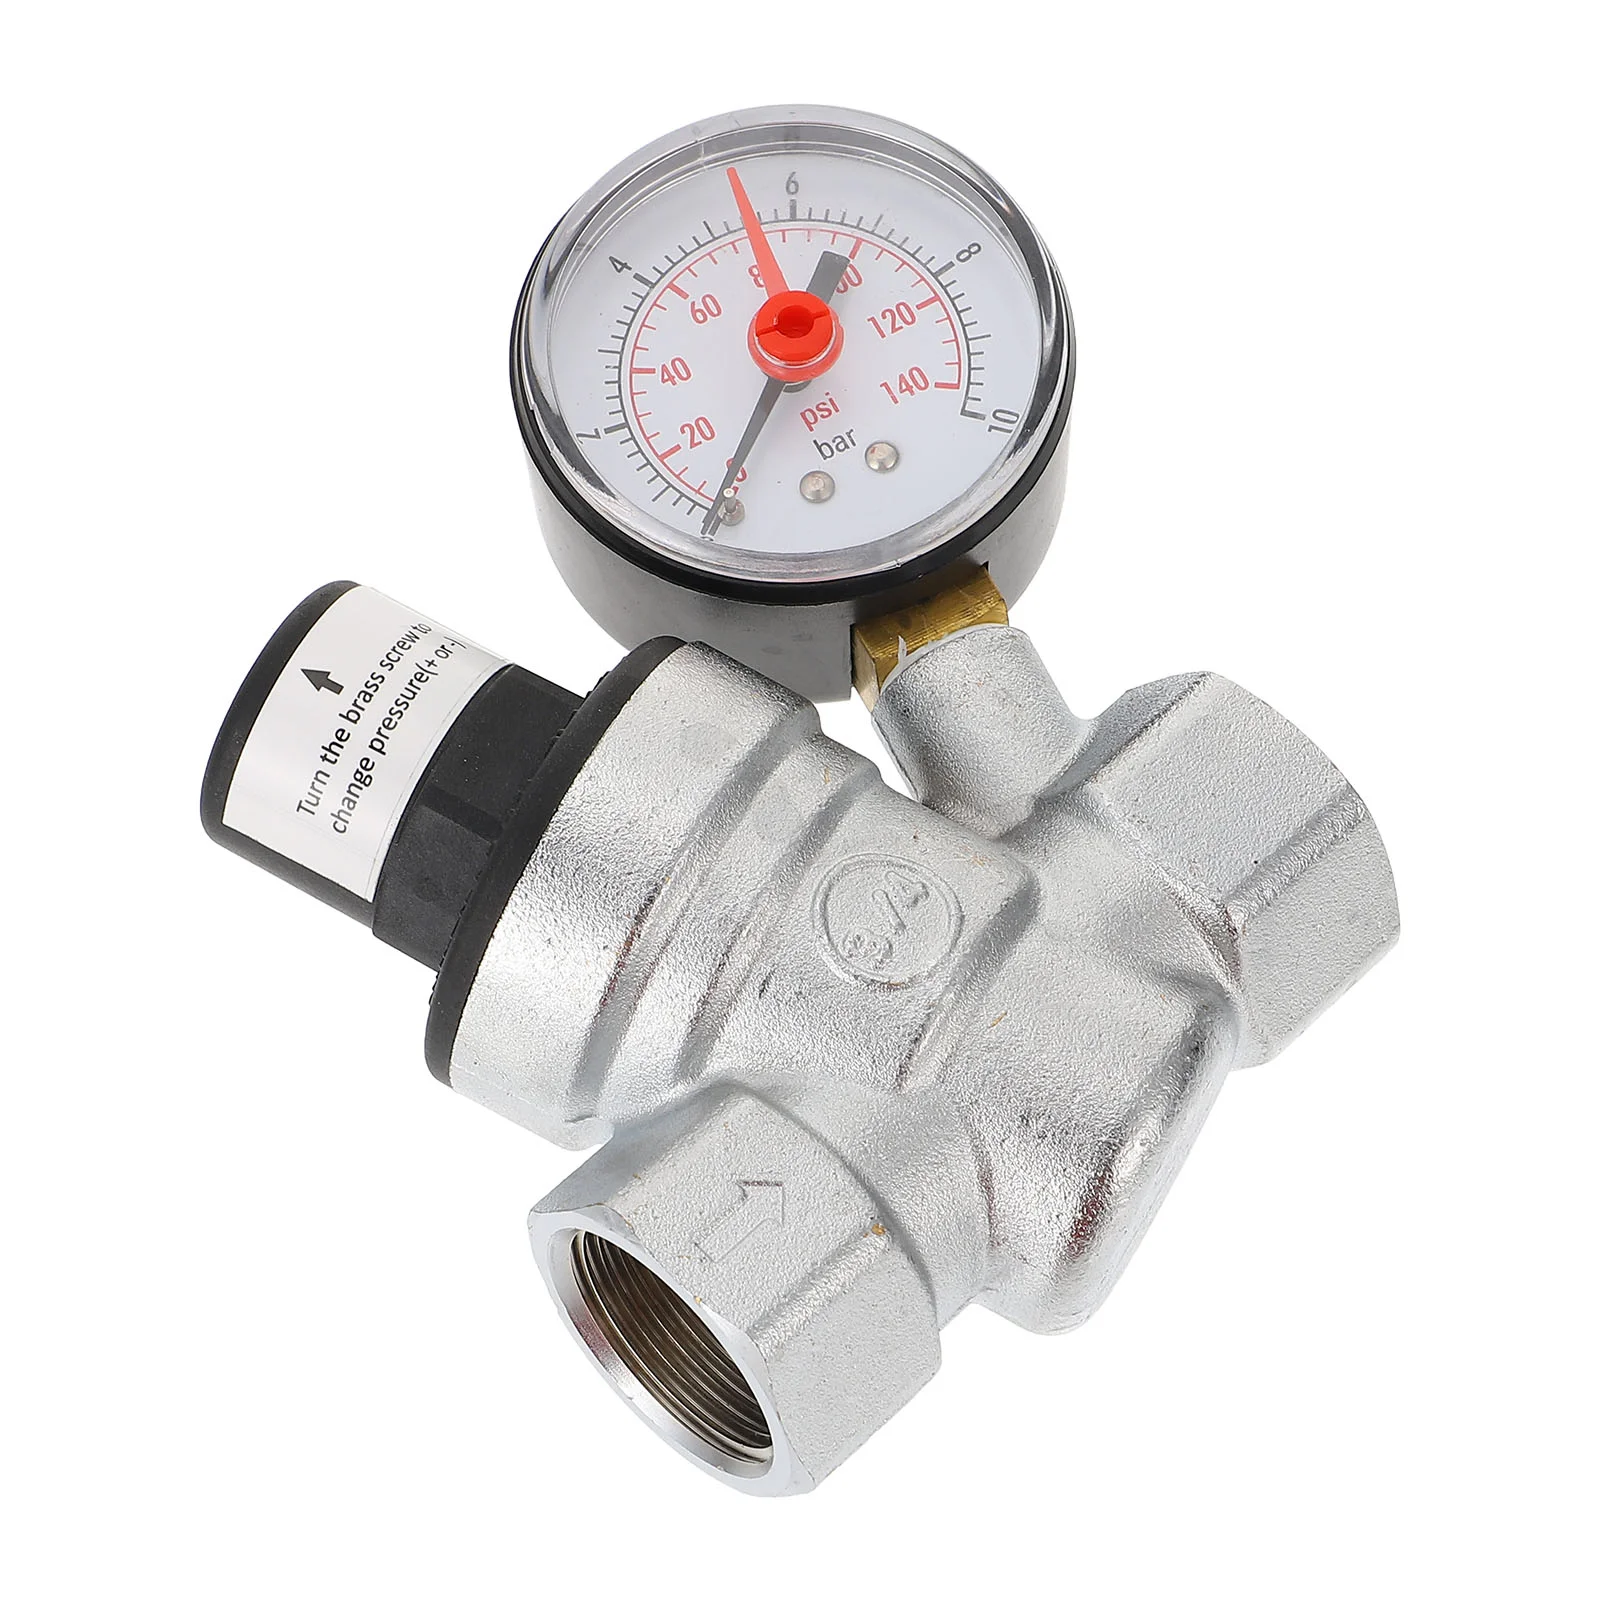 

1 шт. клапаны регулятора давления, регулируемый редуктор давления воды с манометром